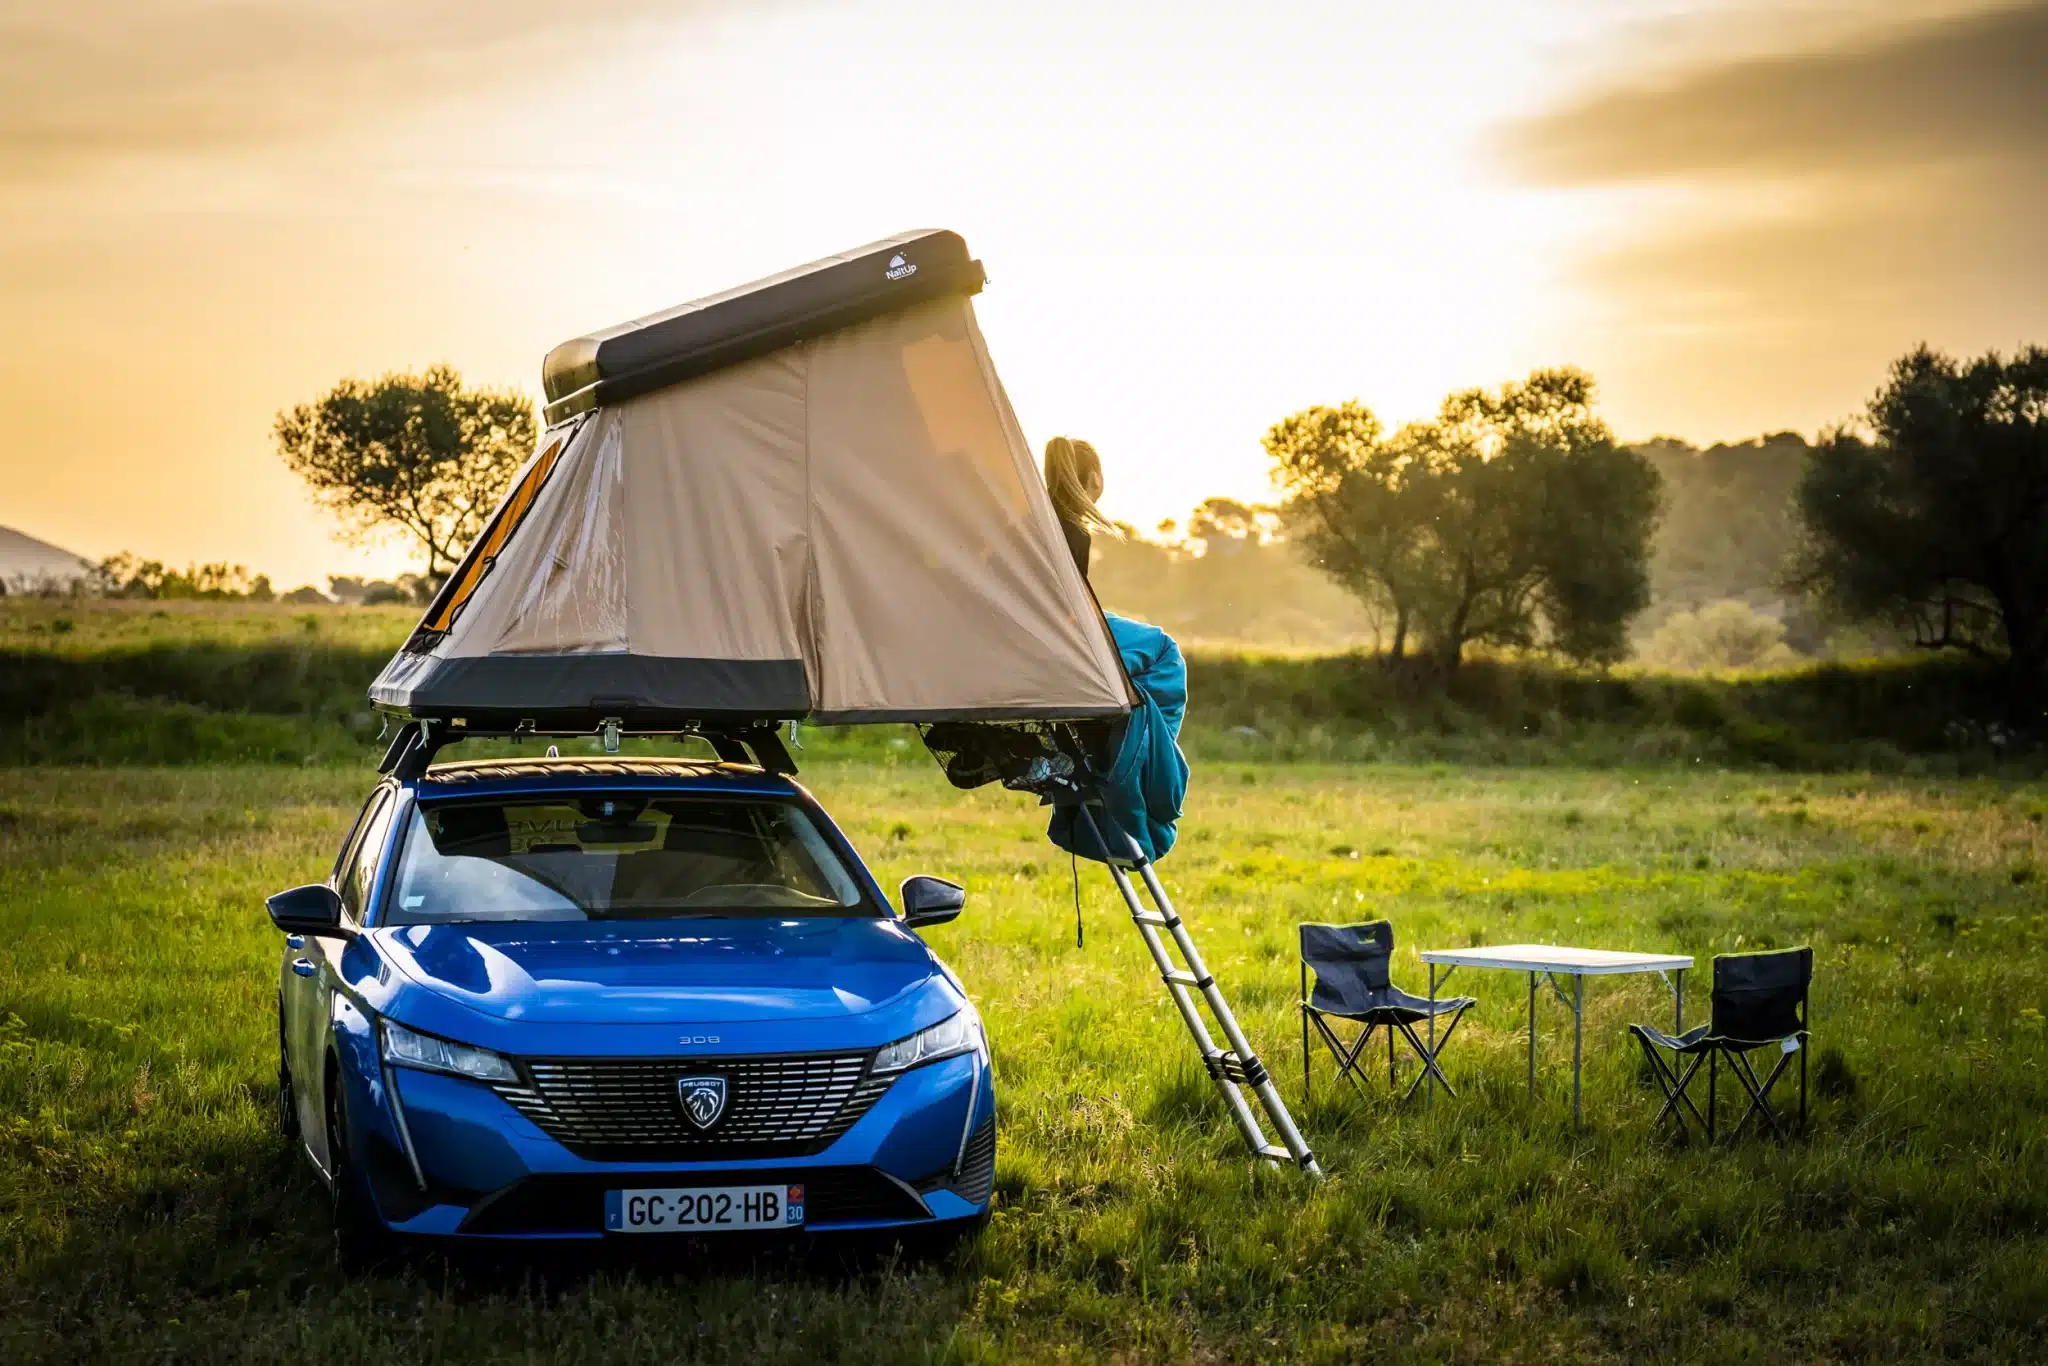 https://passionvoiture.fr/wp-content/uploads/2023/01/tente-de-toit-de-voiture-les-avantages-par-rapport-a-une-caravane-ou-un-camping-car.webp